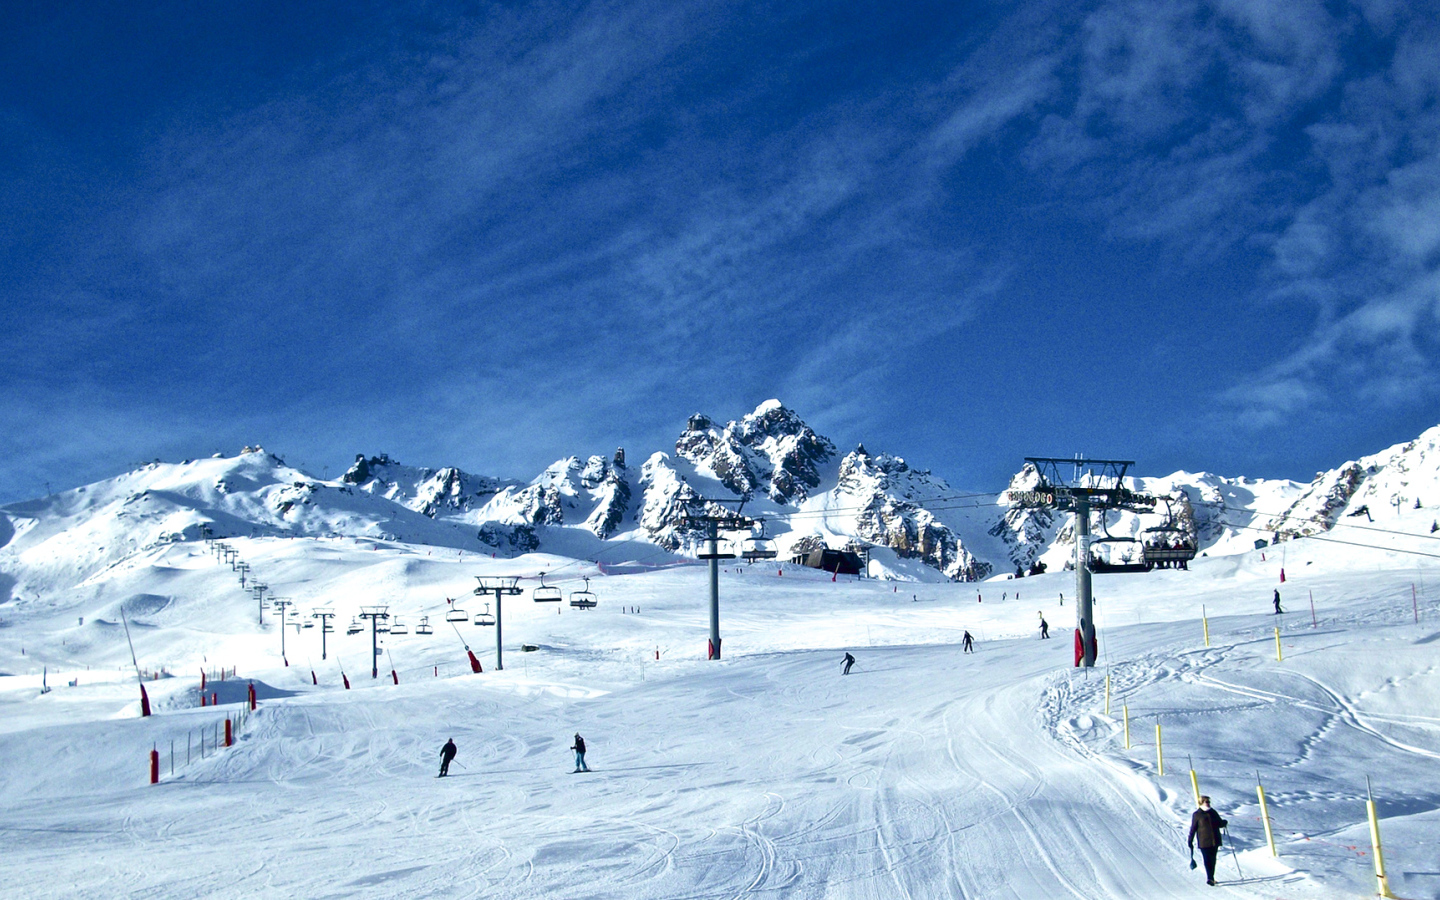 Ski piste in the ski resort of Courchevel, France